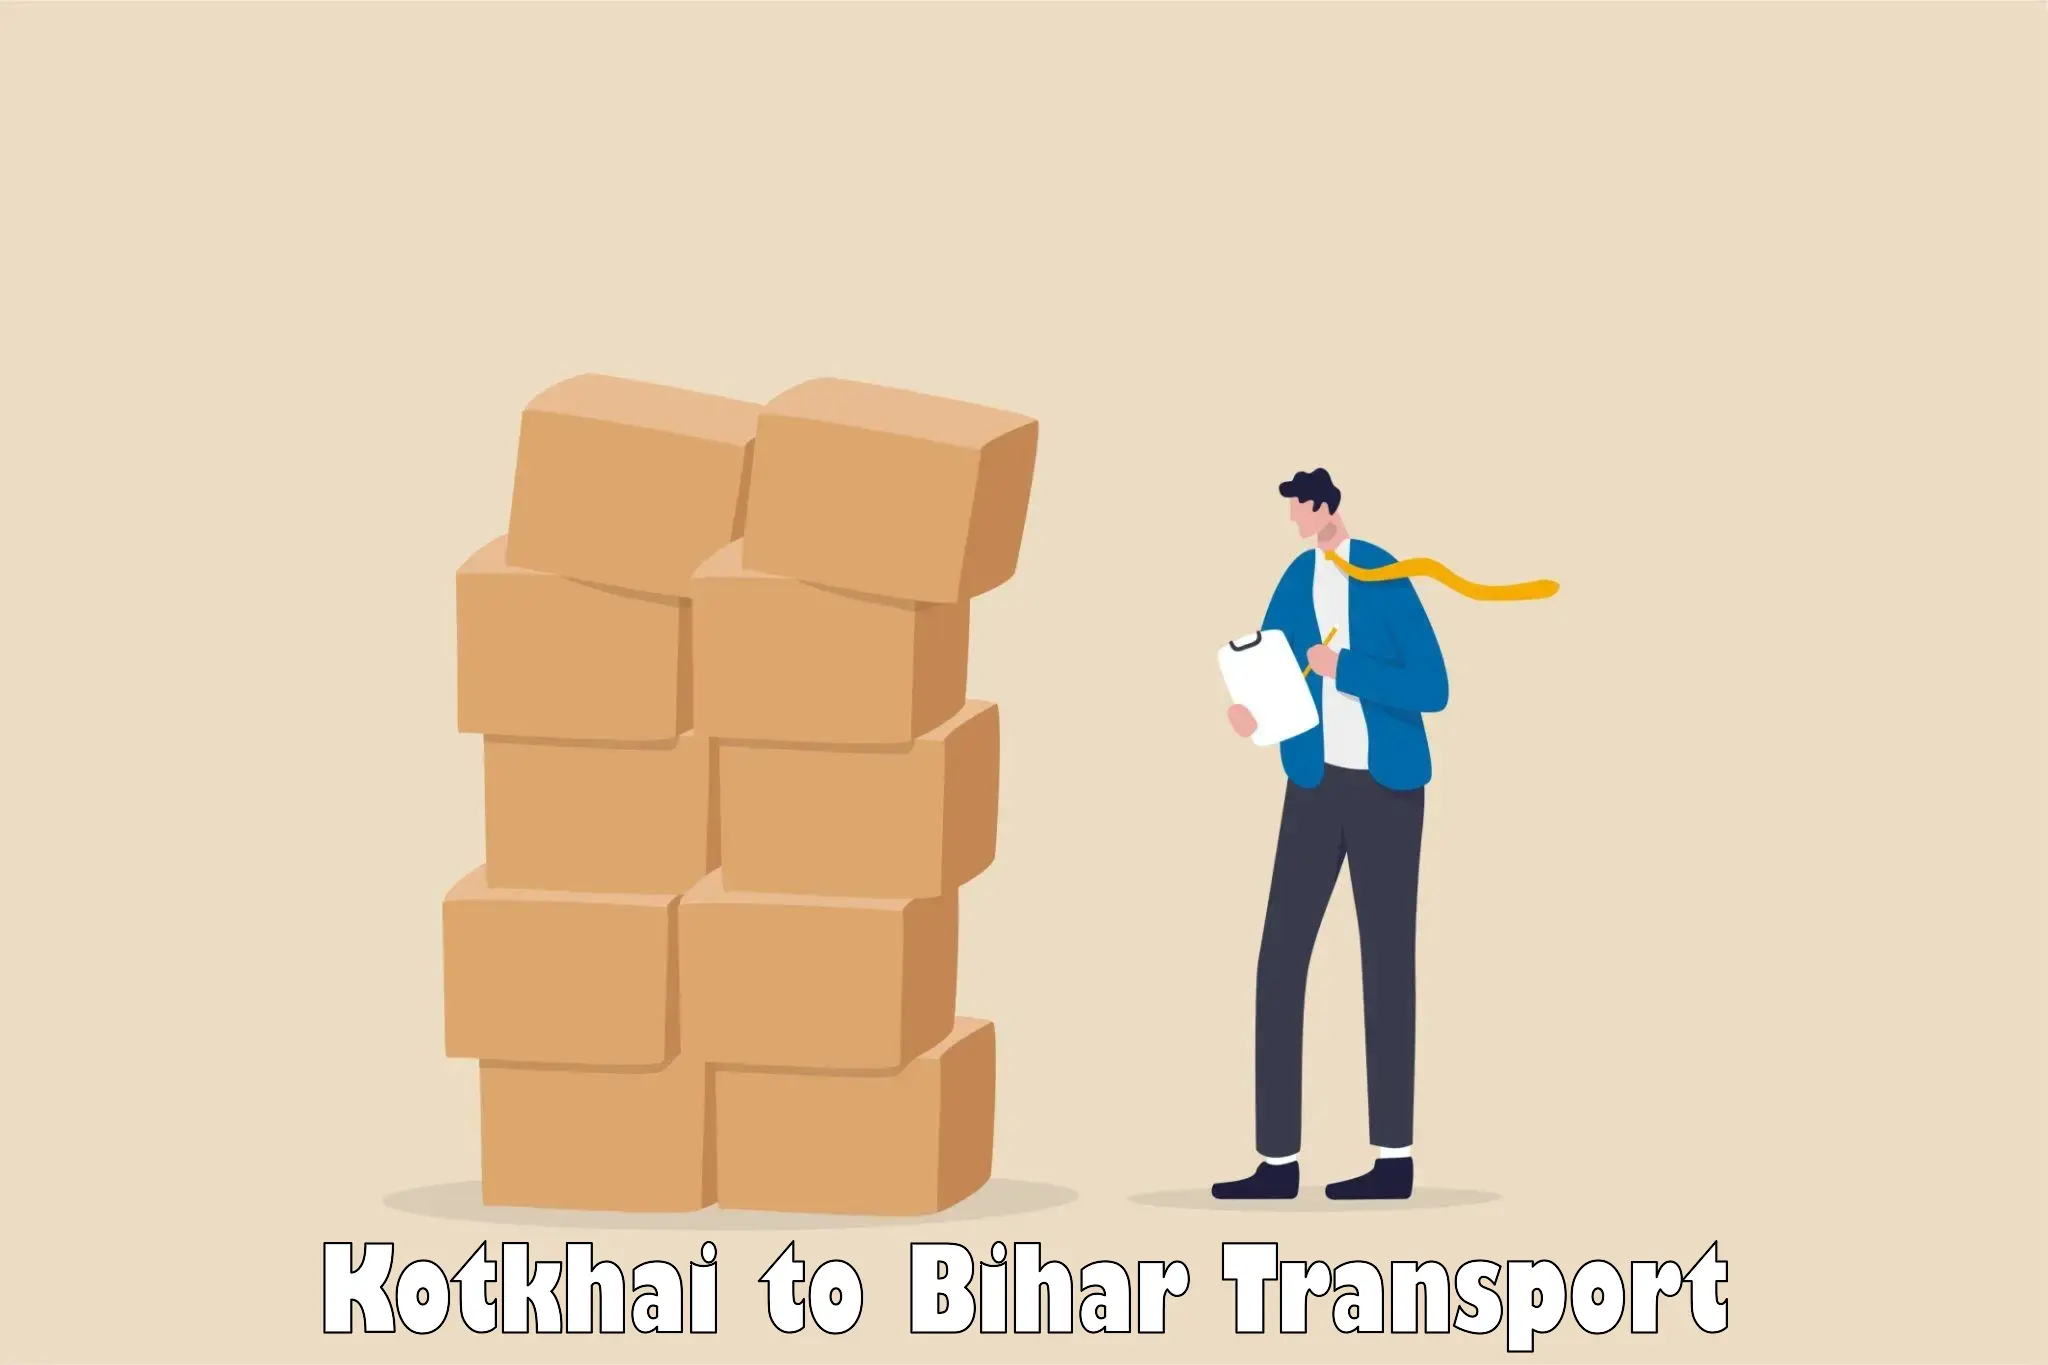 Nearest transport service in Kotkhai to Patna